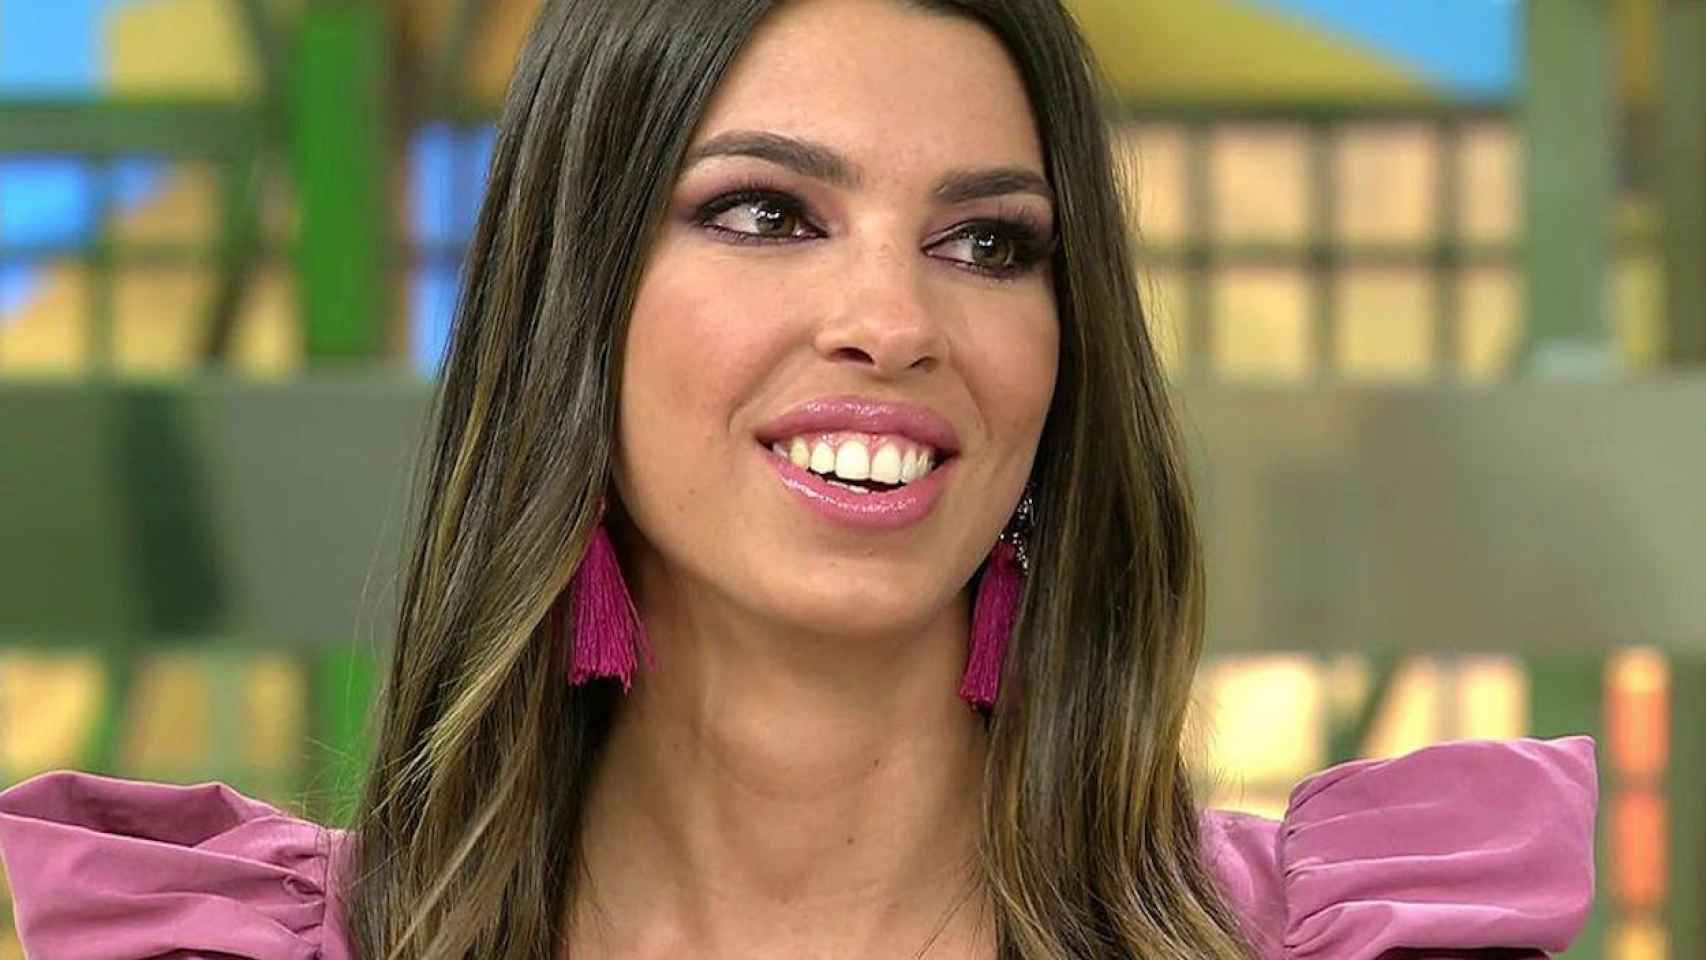 Andrea Gasca, la concursante más polémica de 'La isla de las tentaciones' durante la emisión de un programa / MEDIASET ESPAÑA